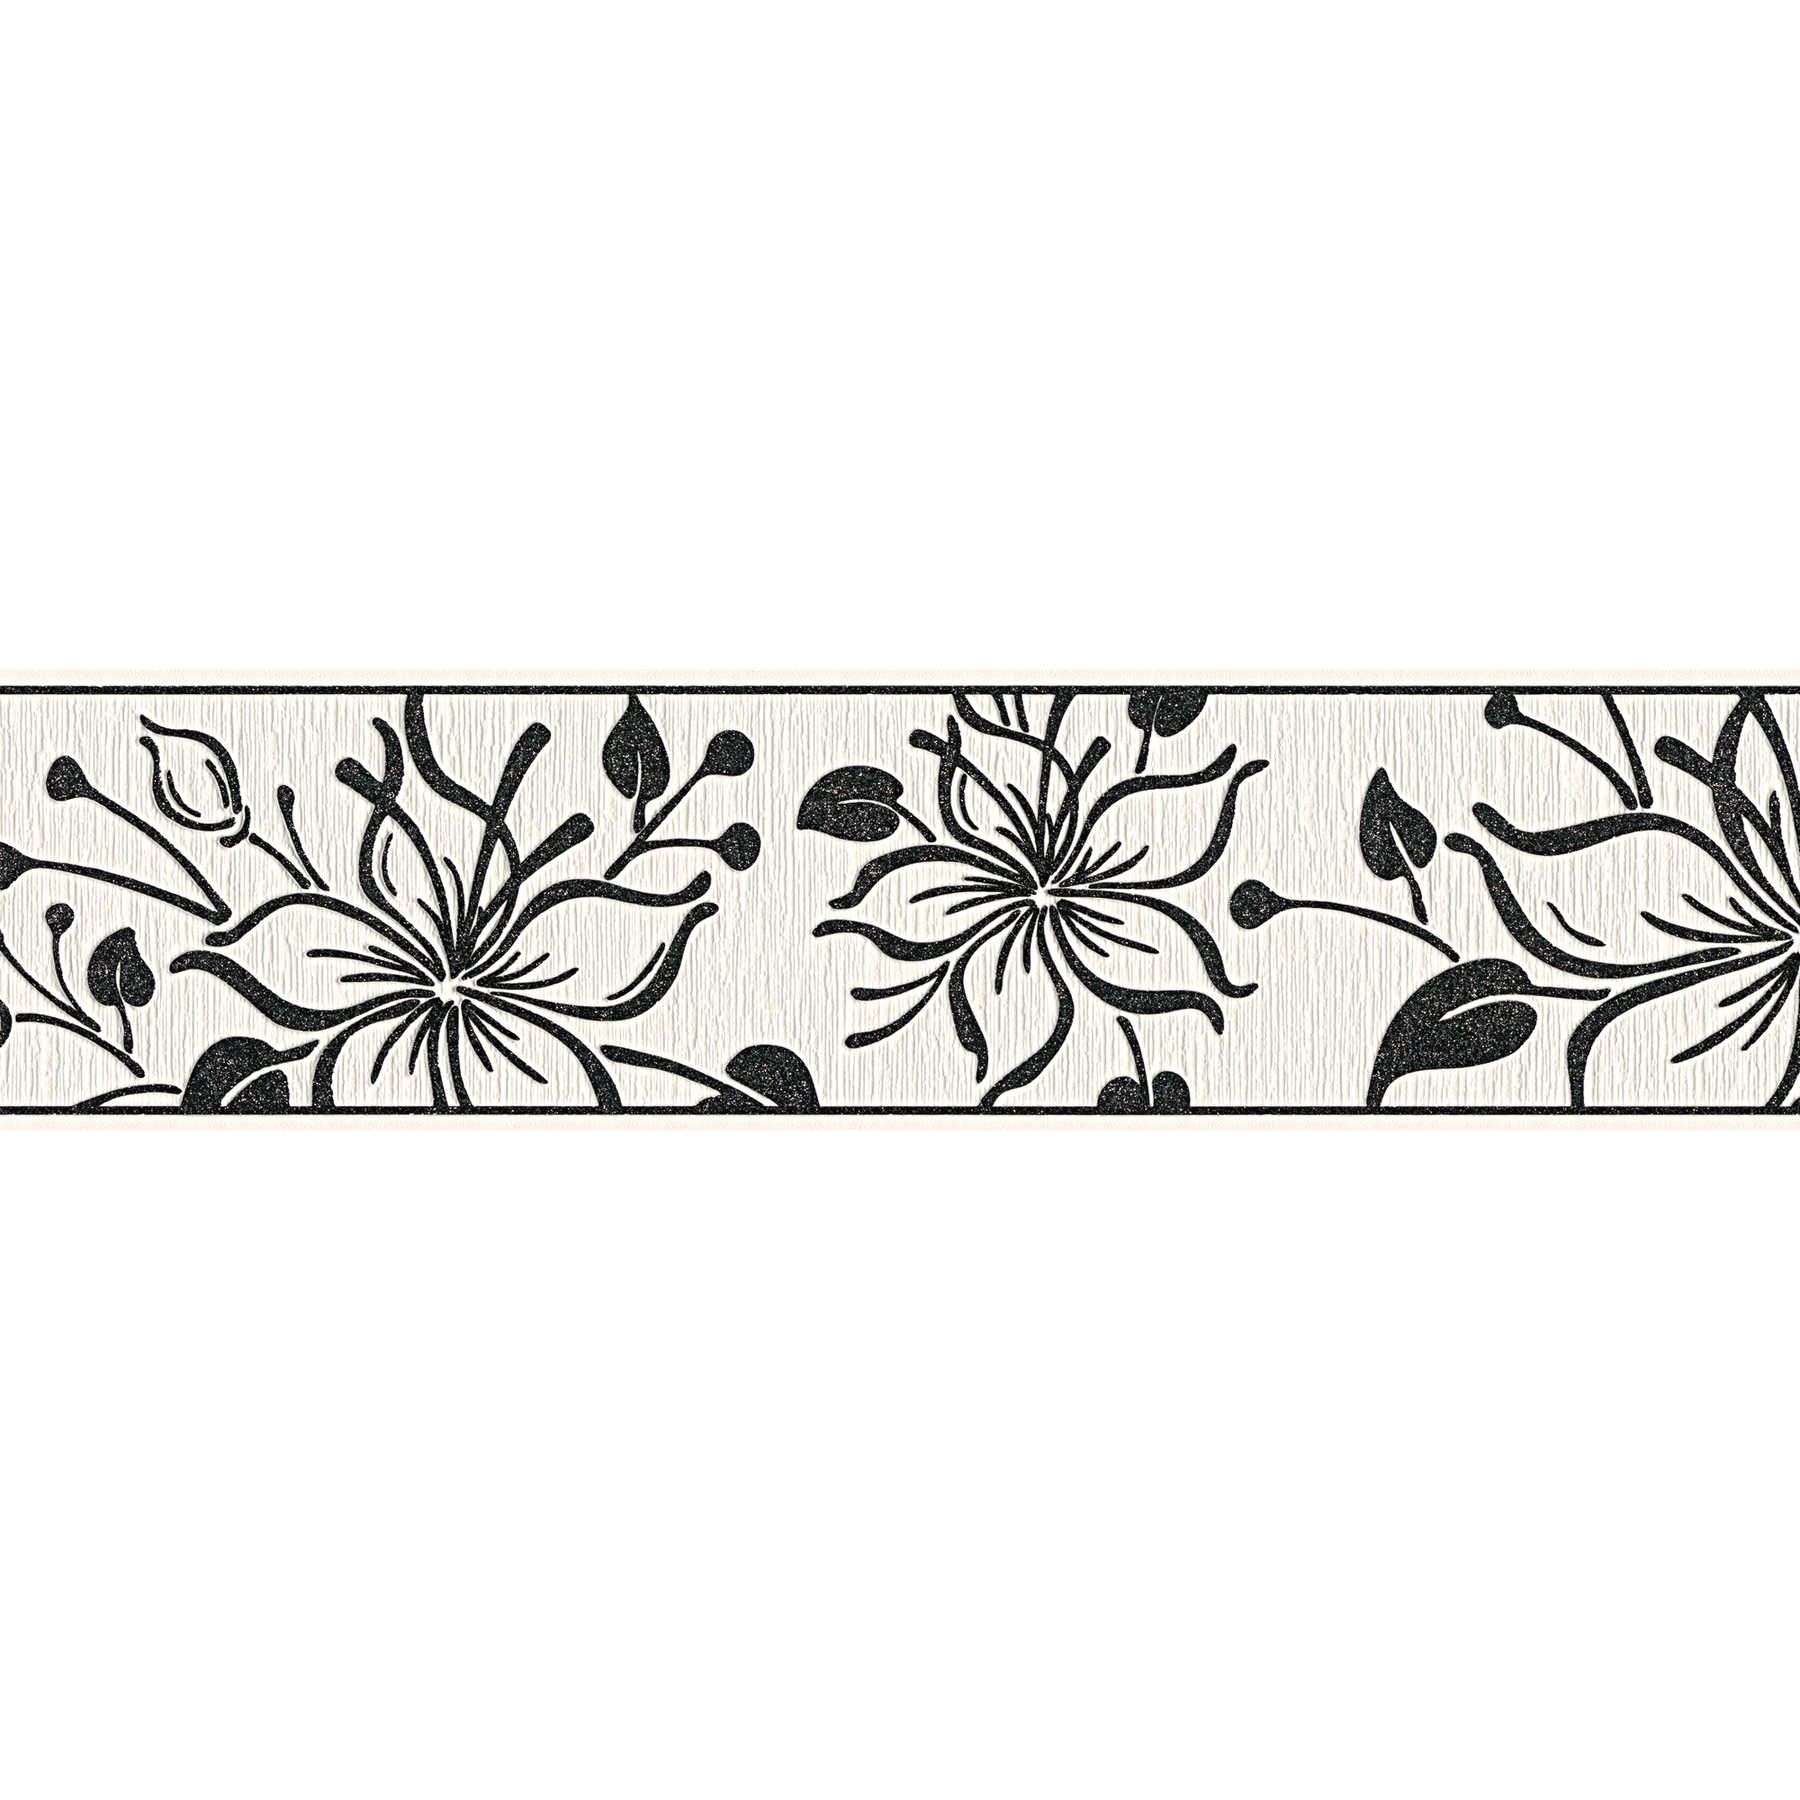         Selbstklebende Tapetenbordüre mit floralem Muster – Schwarz, Weiß
    